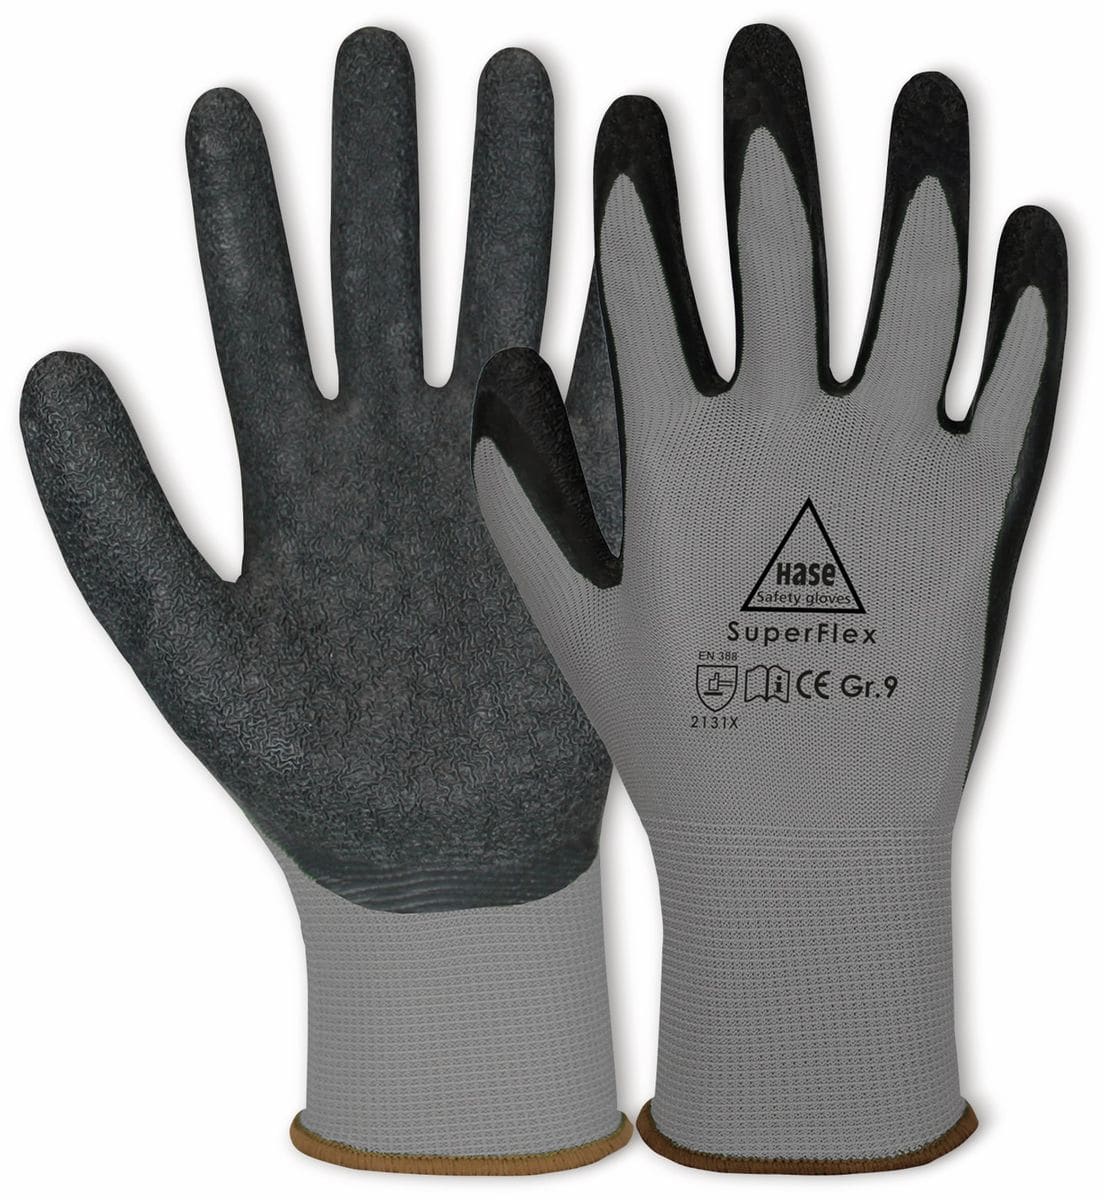 HASE SAFETY GLOVES Latex-Arbeitshandschuhe Superflex, EN 388, EN 420, Größe 9, grau/schwarz von Hase Safety gloves